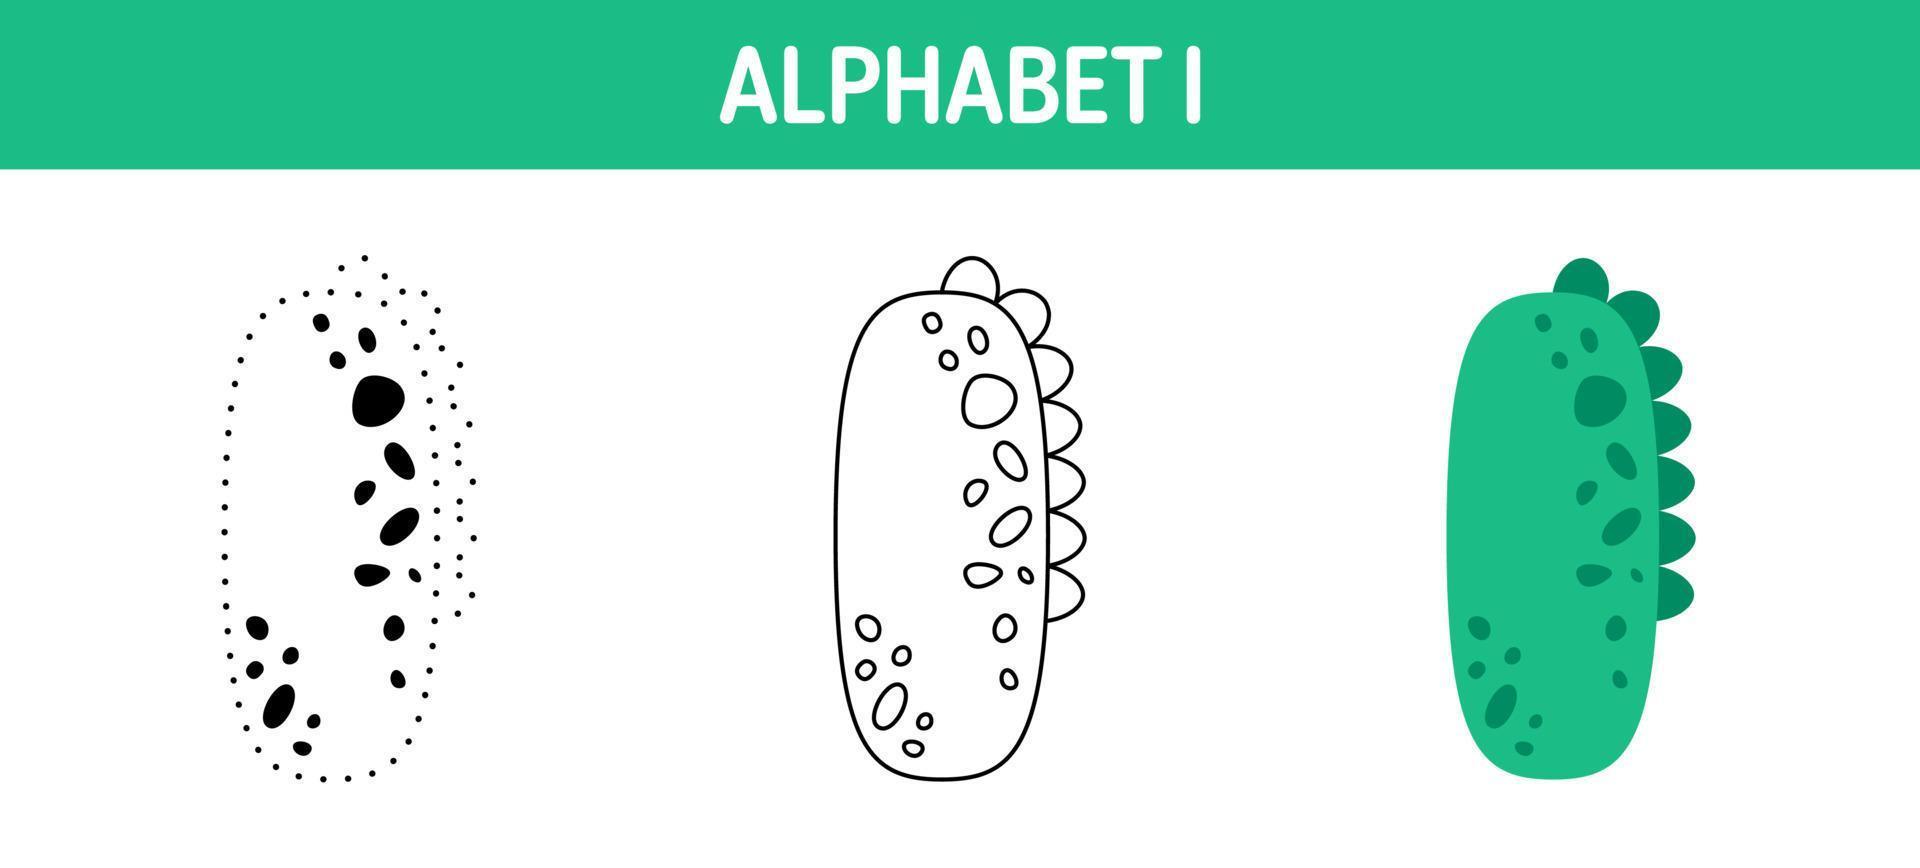 alfabet jag spårande och färg kalkylblad för barn vektor